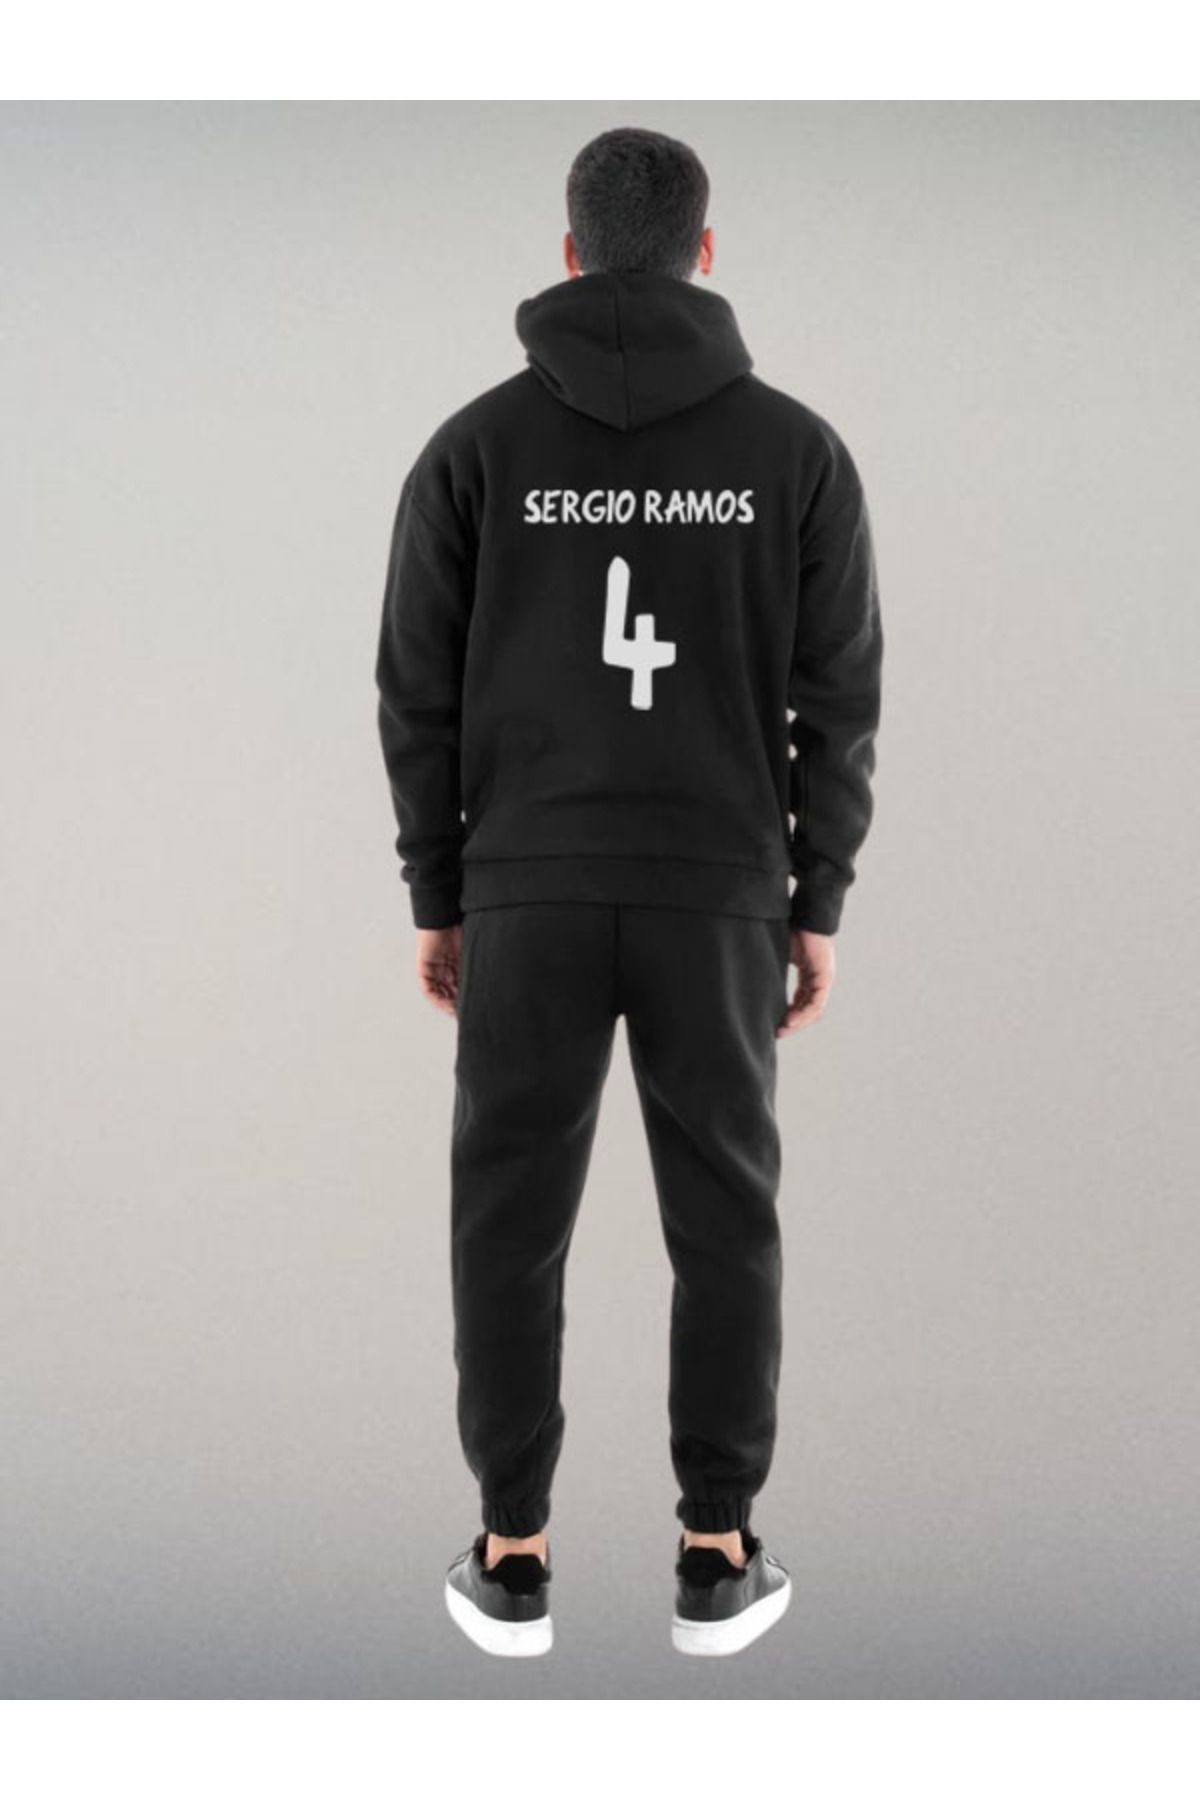 Darkia Sergio Ramos Özel Tasarım Baskılı Kapşonlu Sweatshirt Hoodie Spor Eşofman Takımı